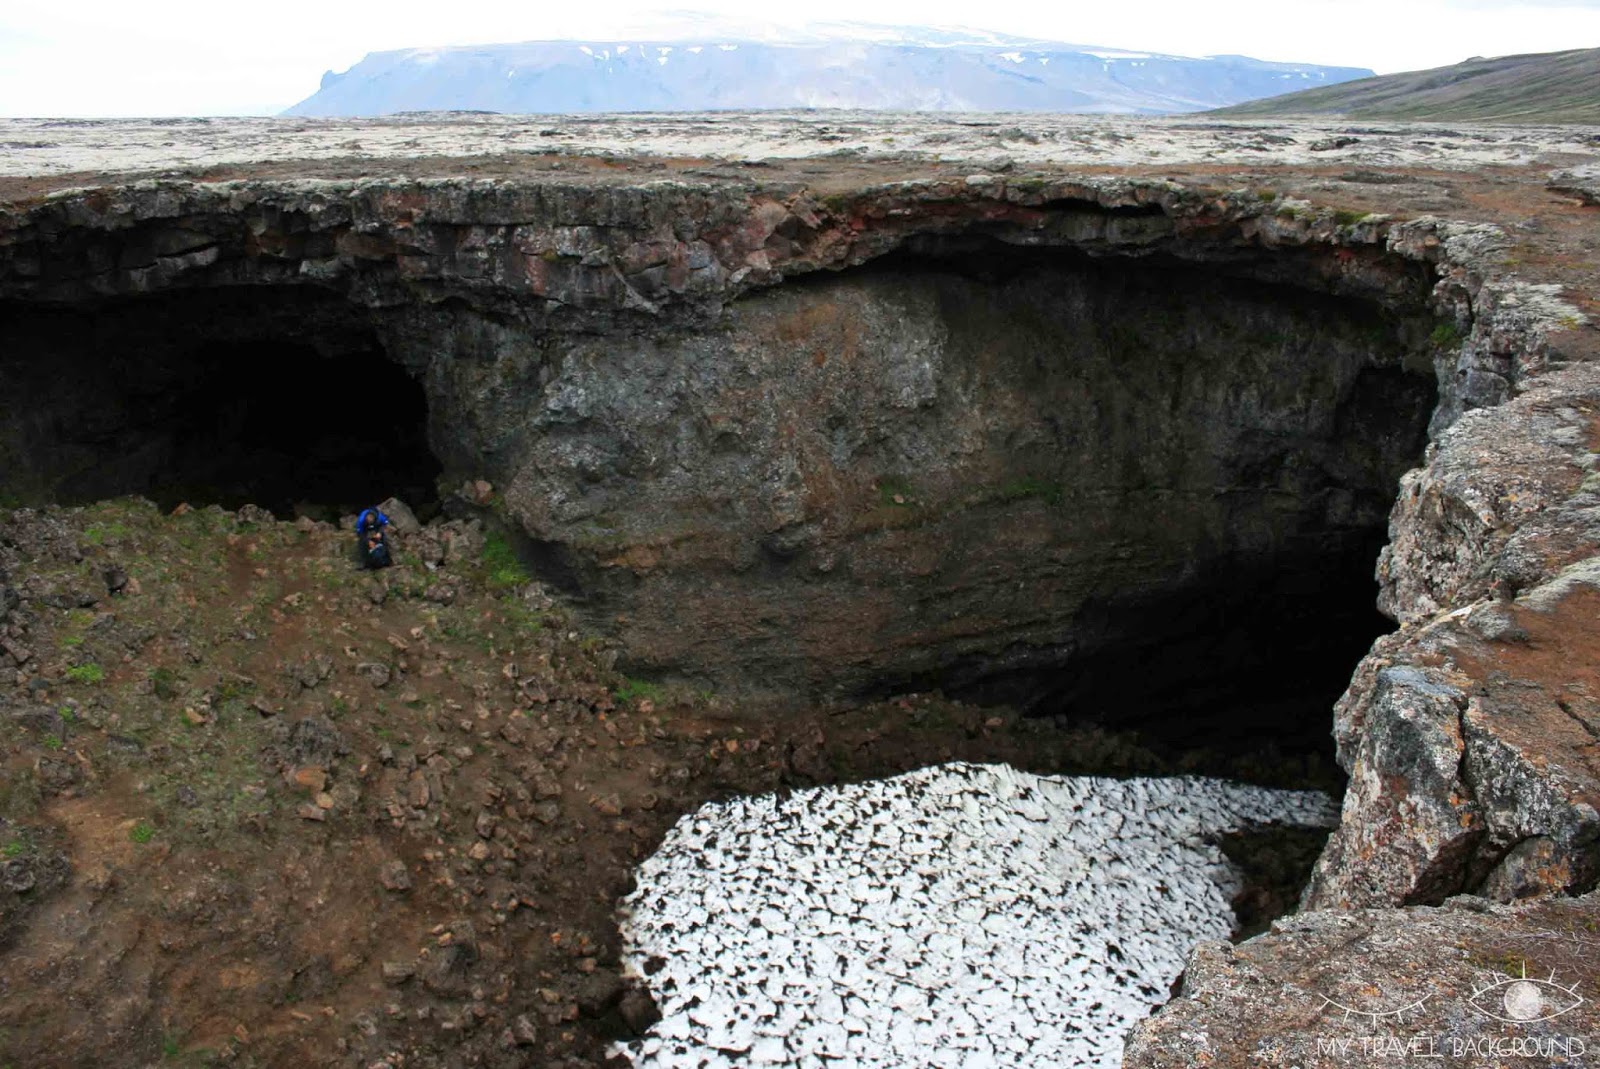 My Travel Background : 2 choses insolites à faire en Islande - Marcher dans un tunnel de lave